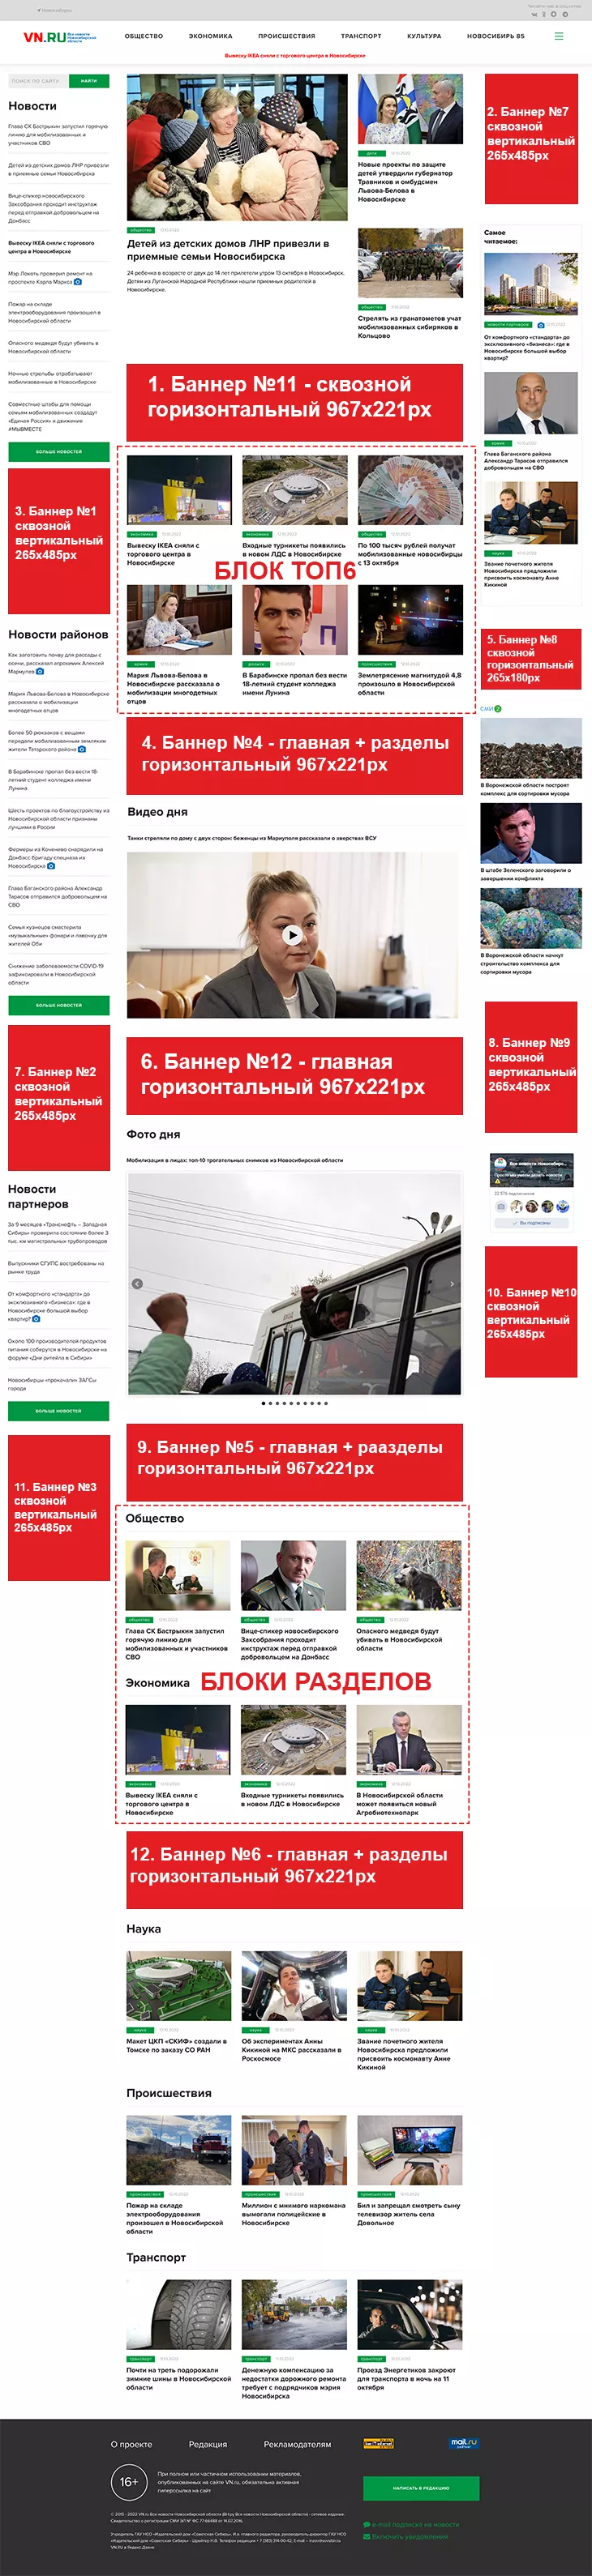 Баннерная реклама VN.ru на главной странице